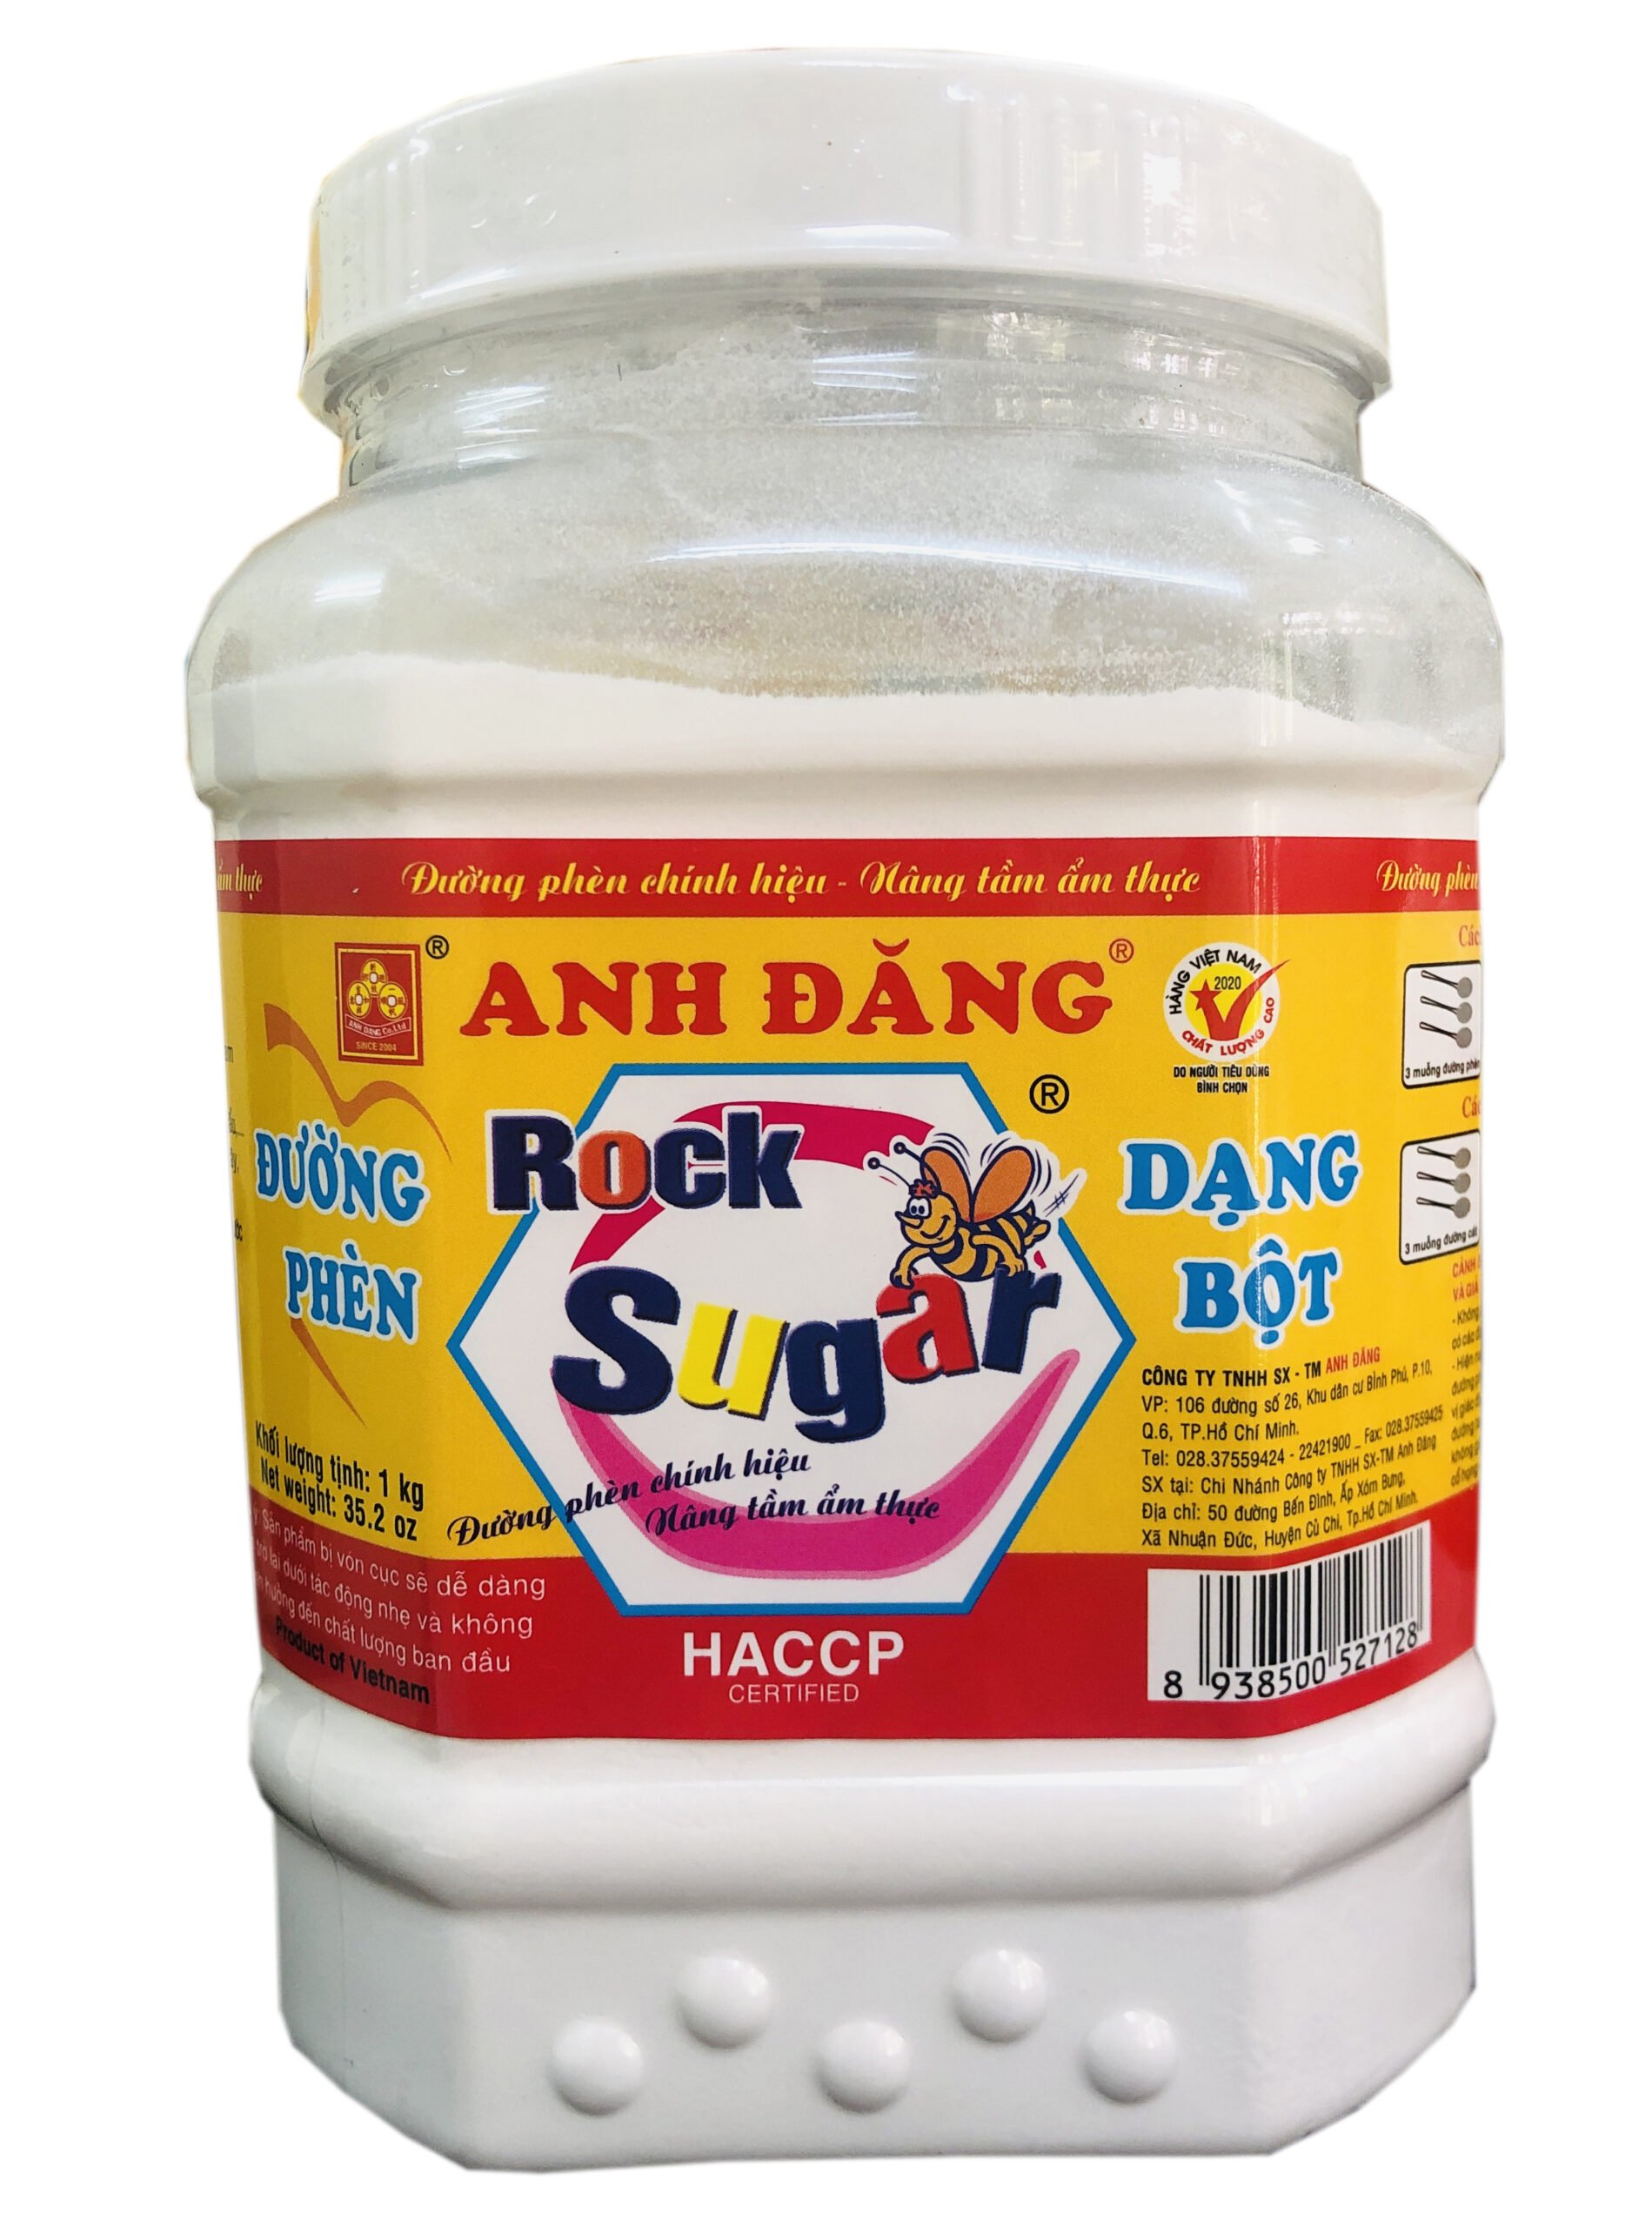 Đường Phèn Bột Dạng Hộp 1kg ( Powdered Rock Sugar - 1kg Boxed)